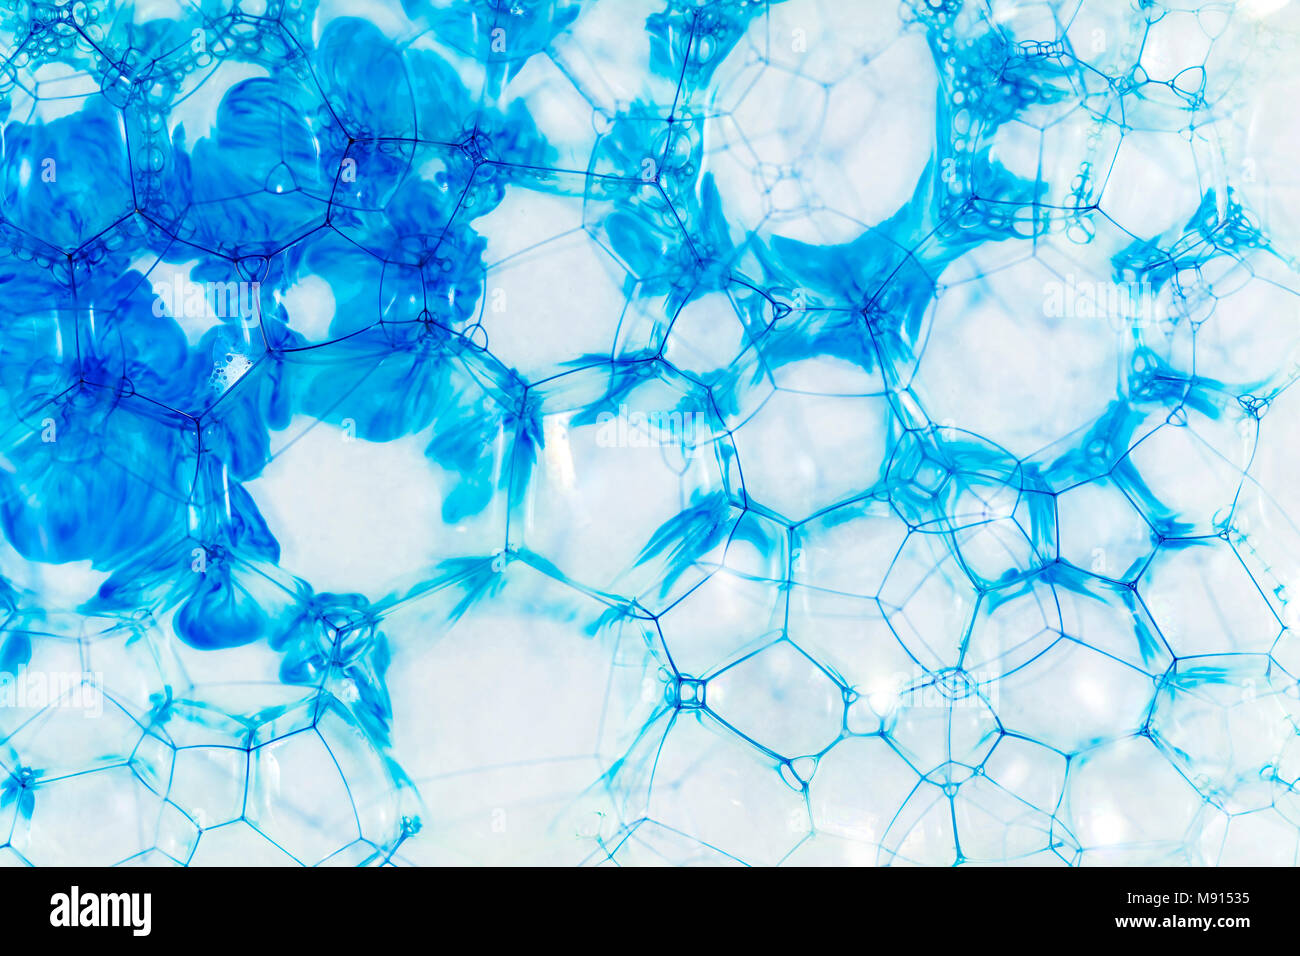 Gota de color azul en las burbujas de aire.Imagine la estructura de ocultación de patógenos en el agua. Foto de stock